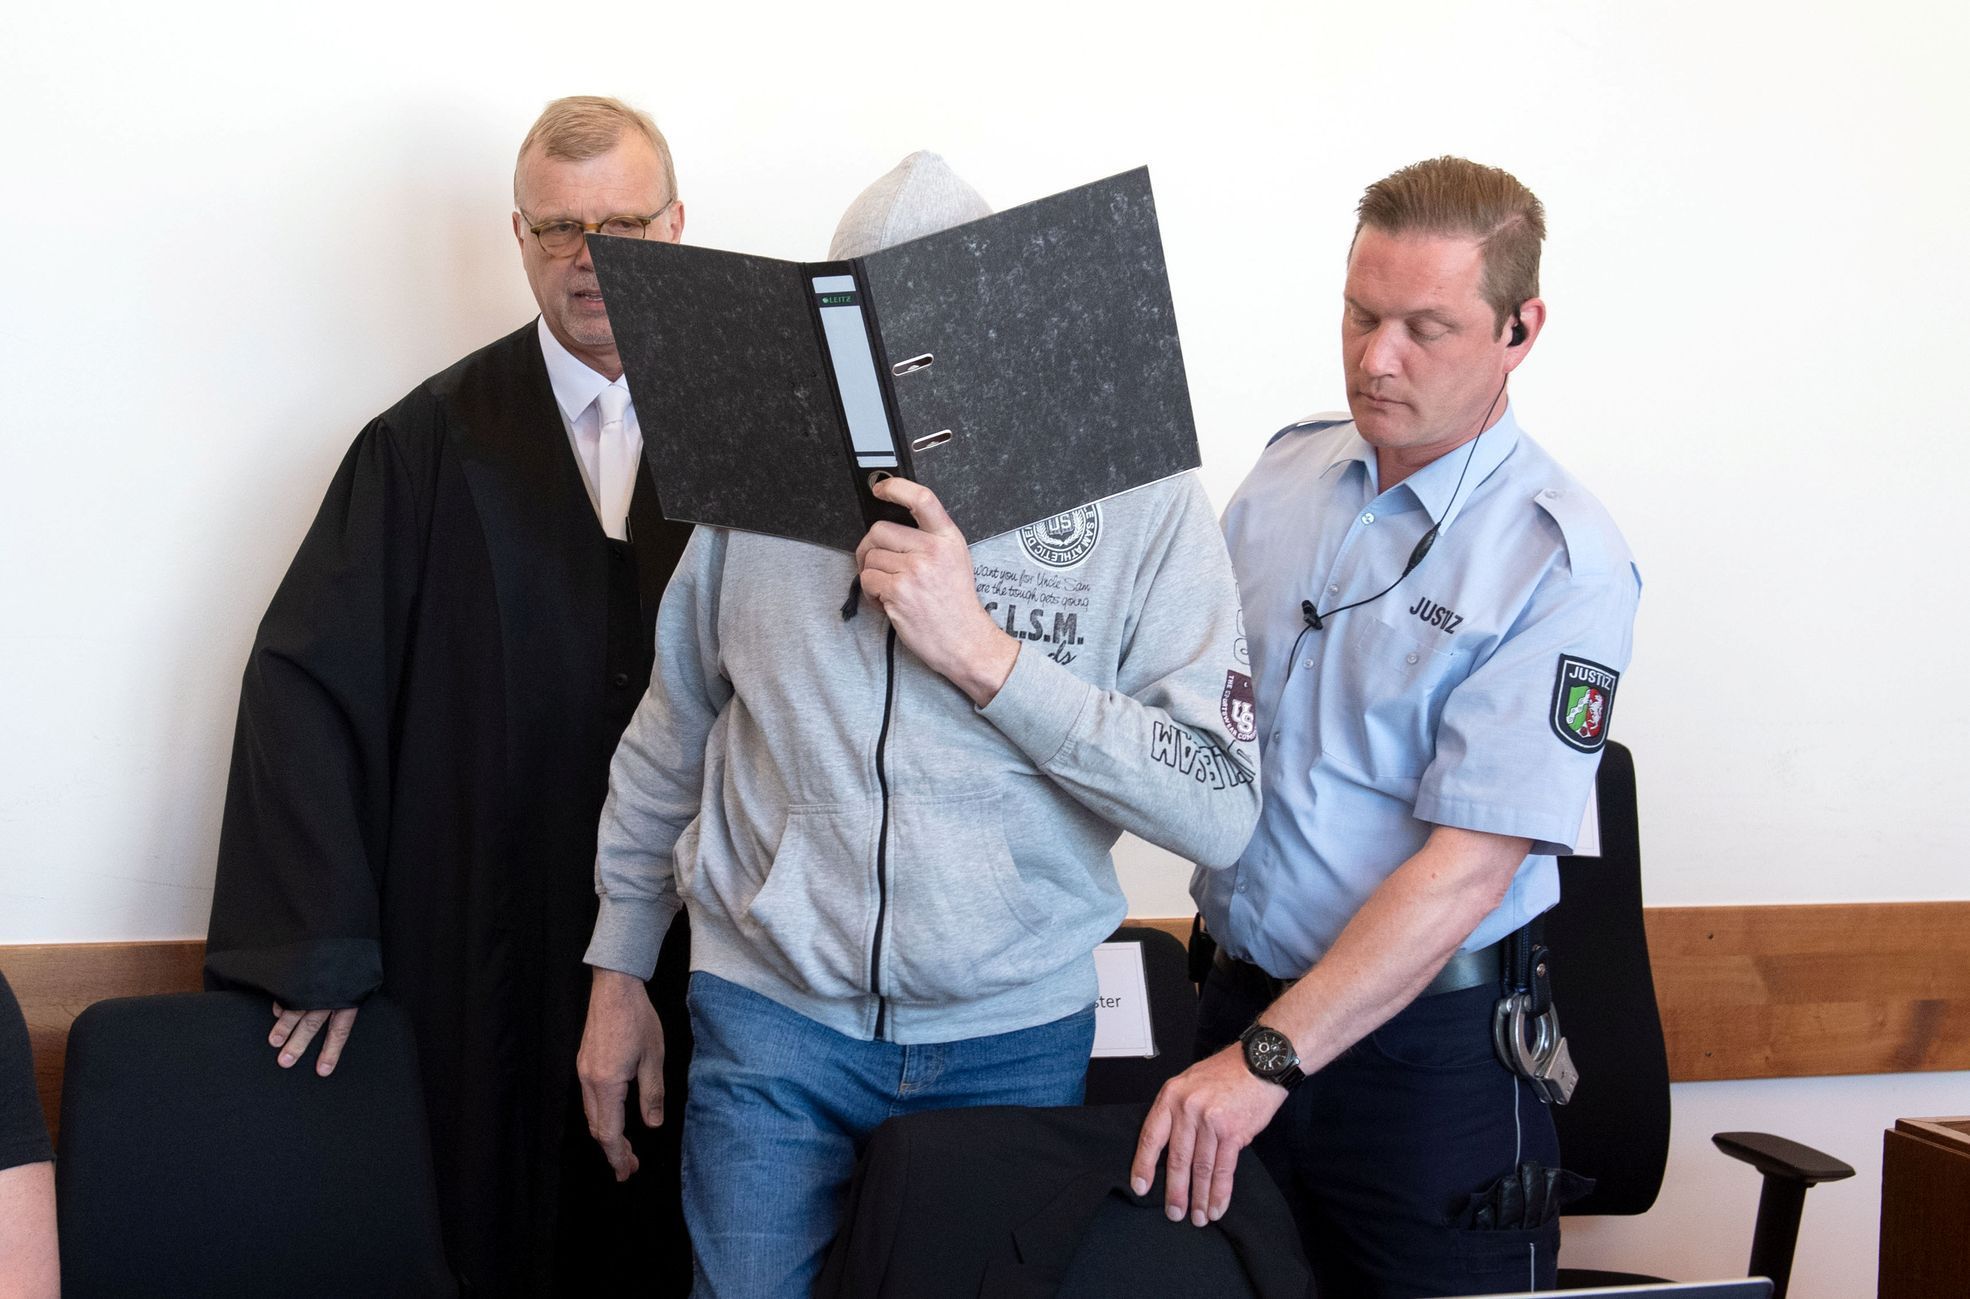 Šestapadesátiletý Andreas V. odsouzený za sexuální zneužívání dětí.